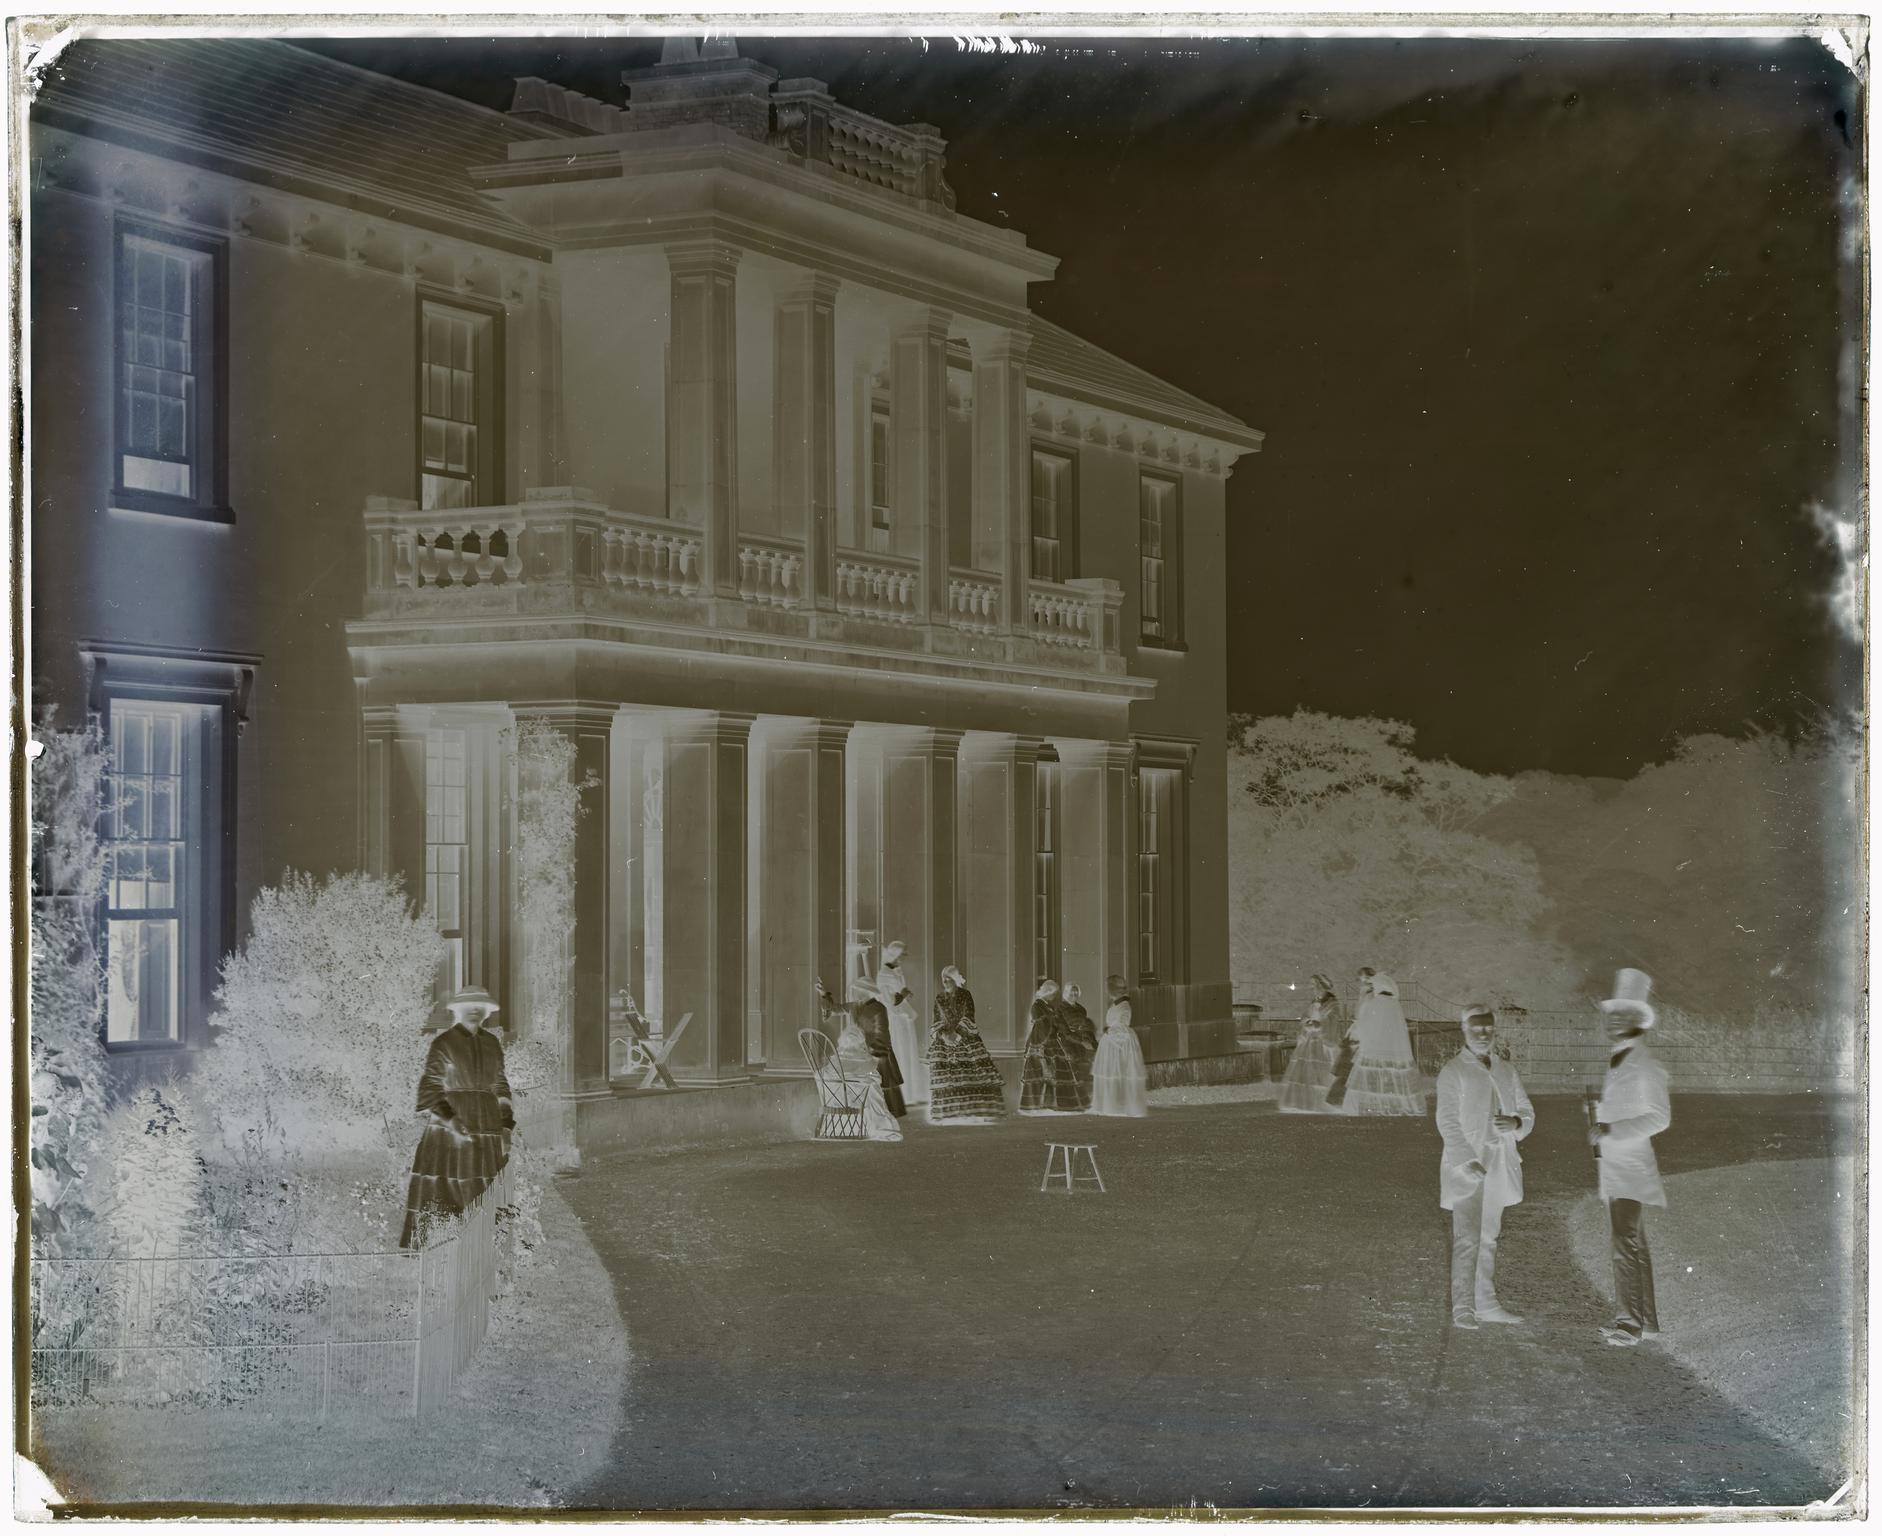 Penllergare House, glass negative